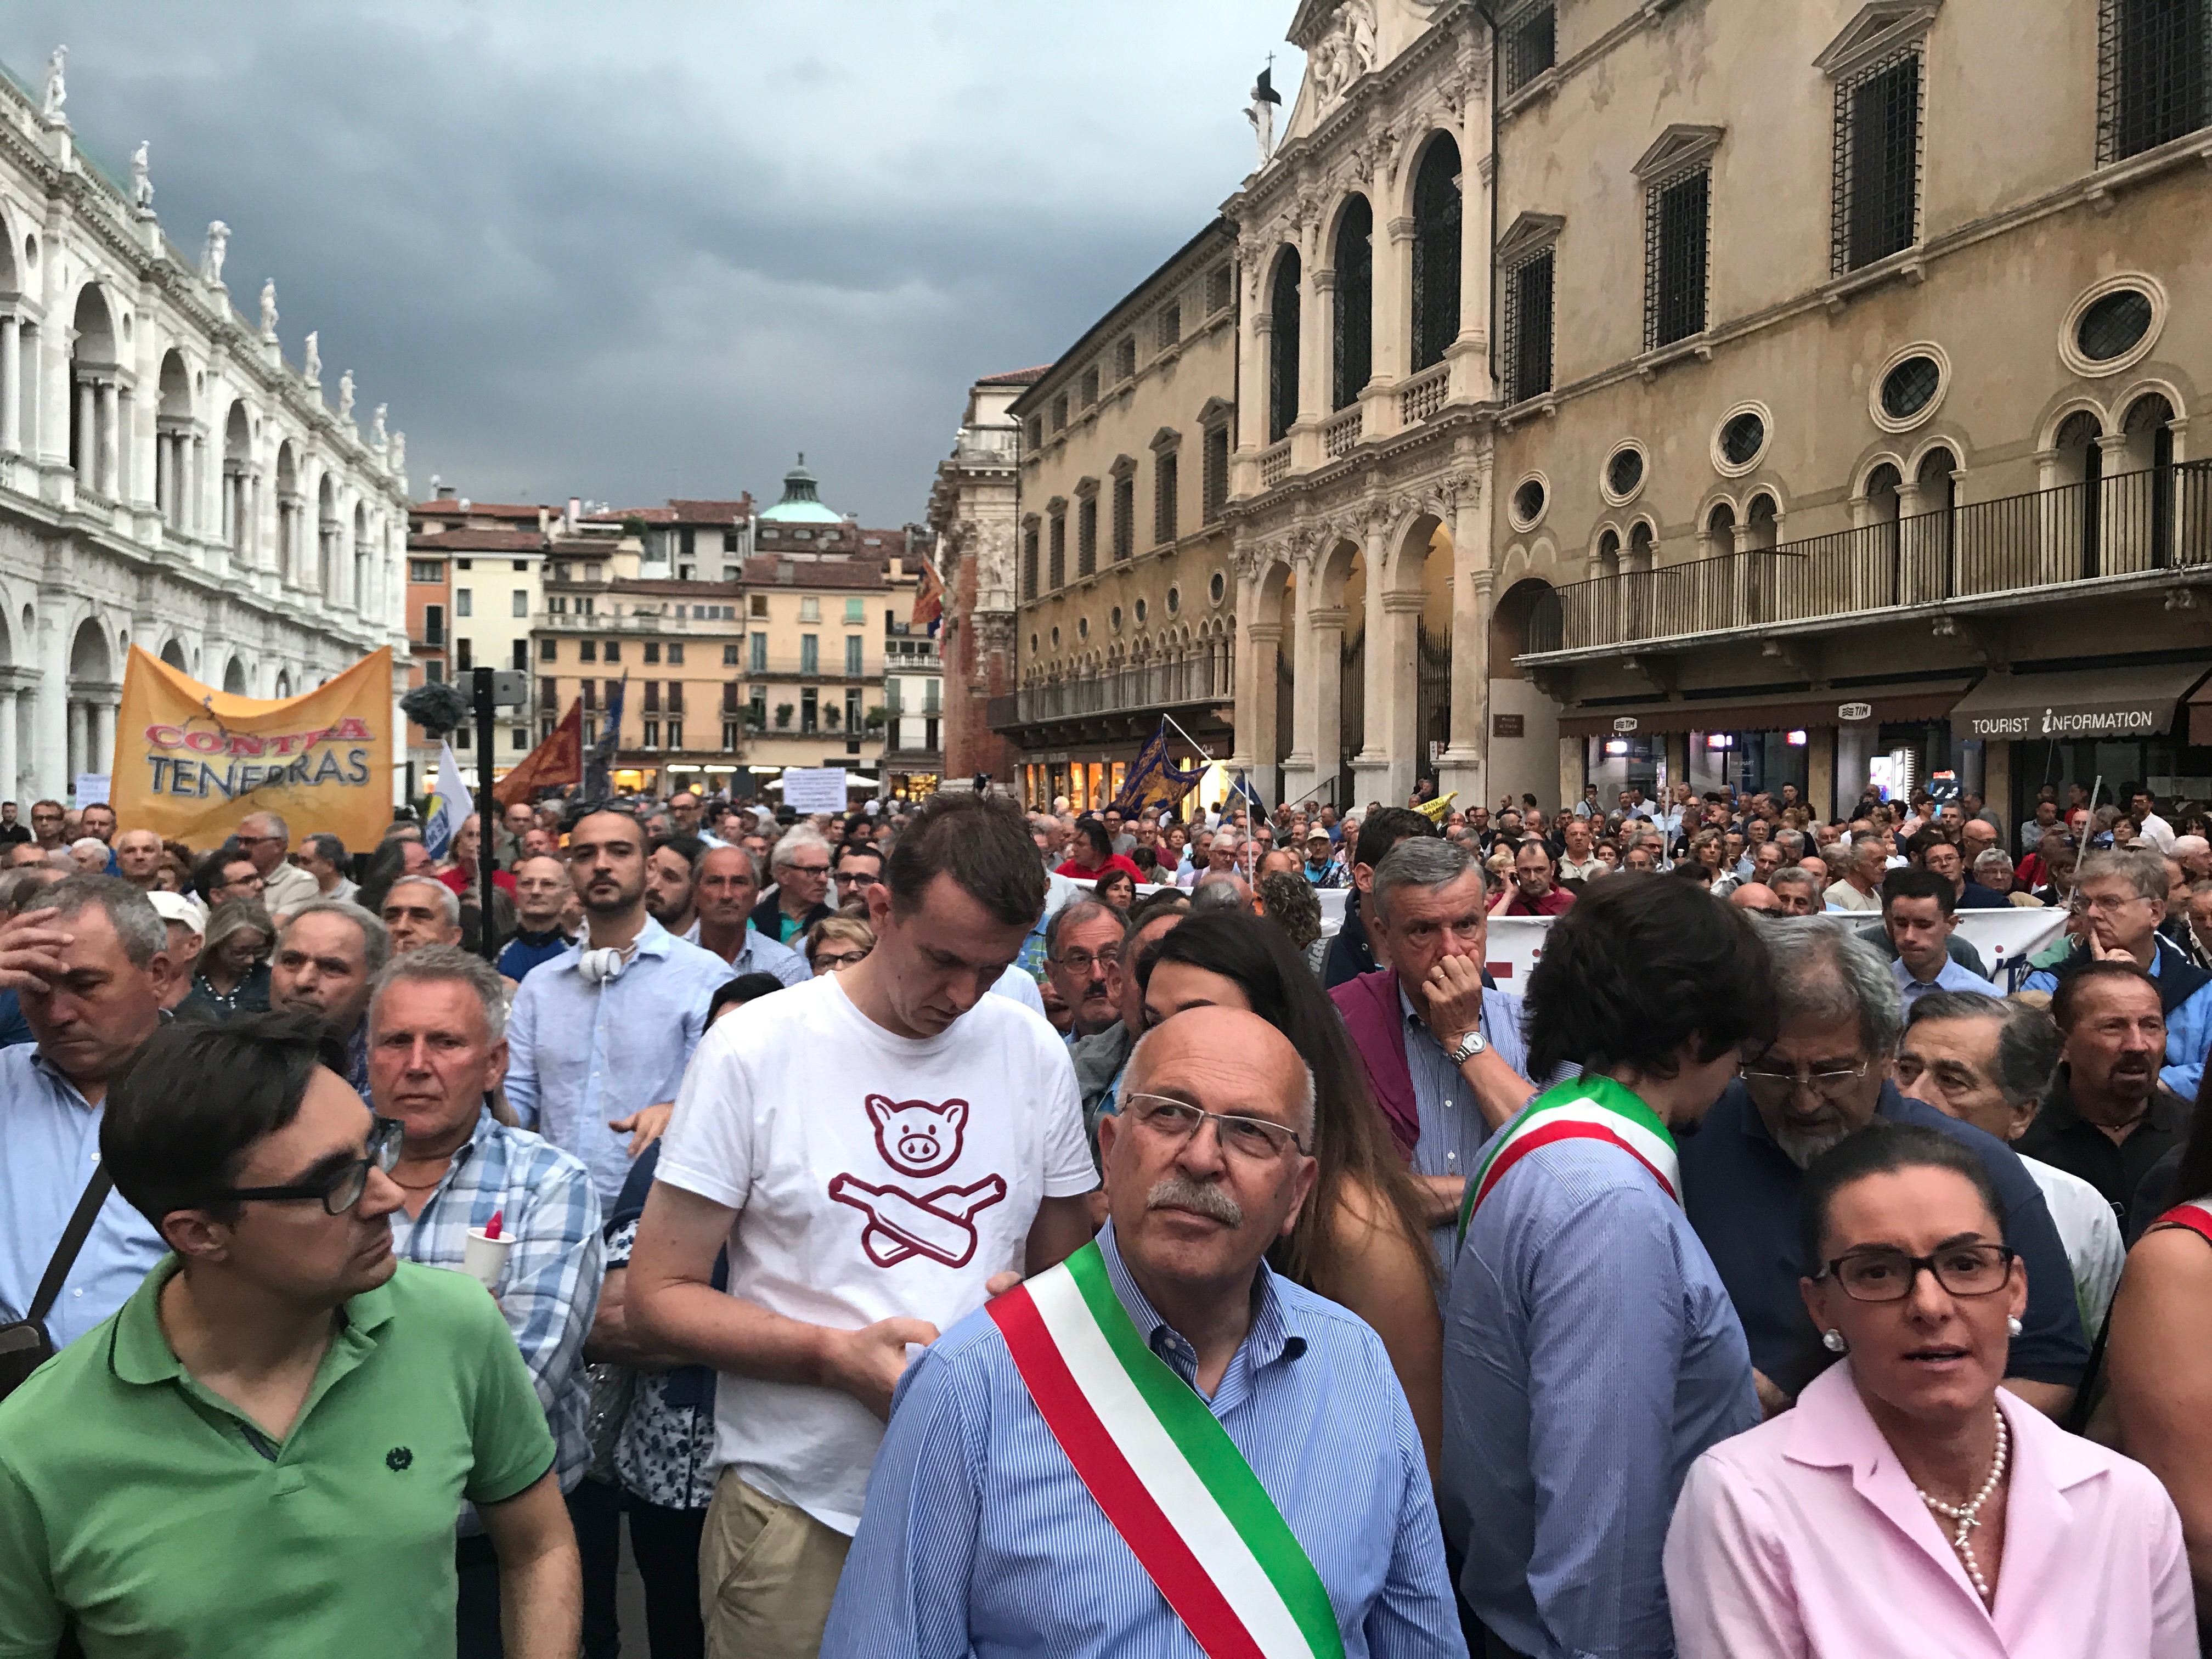 Risparmiatori soci BPVi e Veneto Banca che manifestavano per indennizzi a Piazza dei Signori a Vicenza